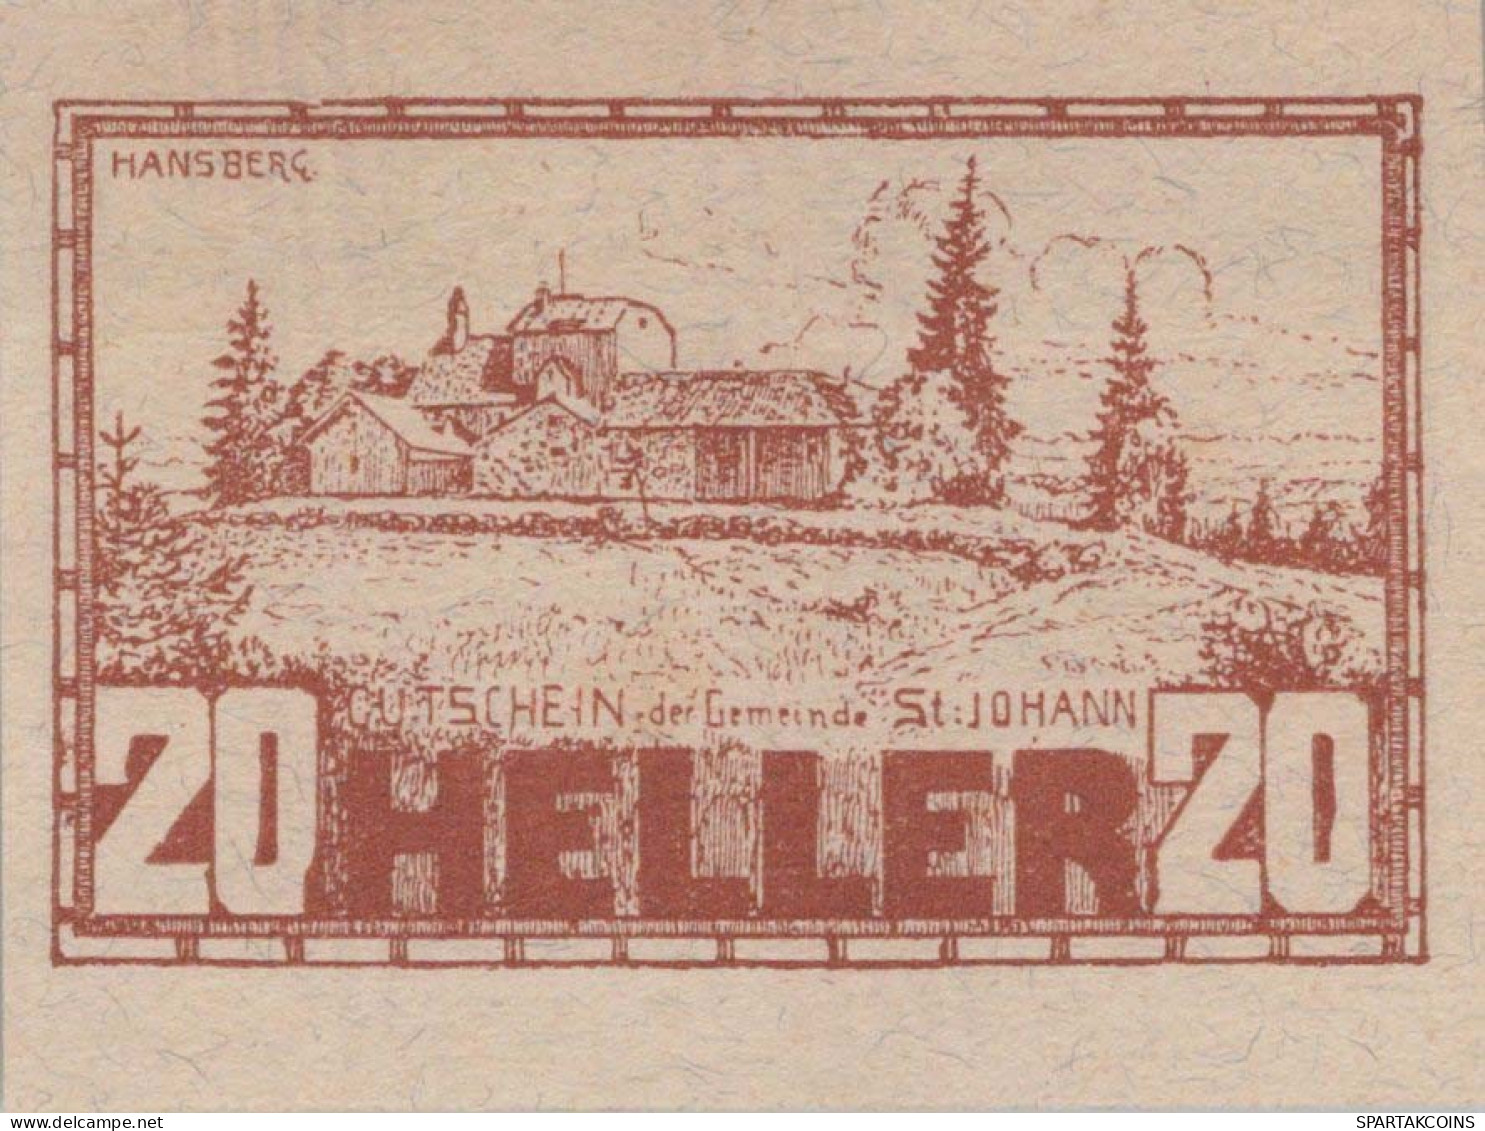 20 HELLER 1920 Stadt SANKT JOHANN AM WIMBERG Oberösterreich Österreich UNC Österreich #PH051 - [11] Local Banknote Issues